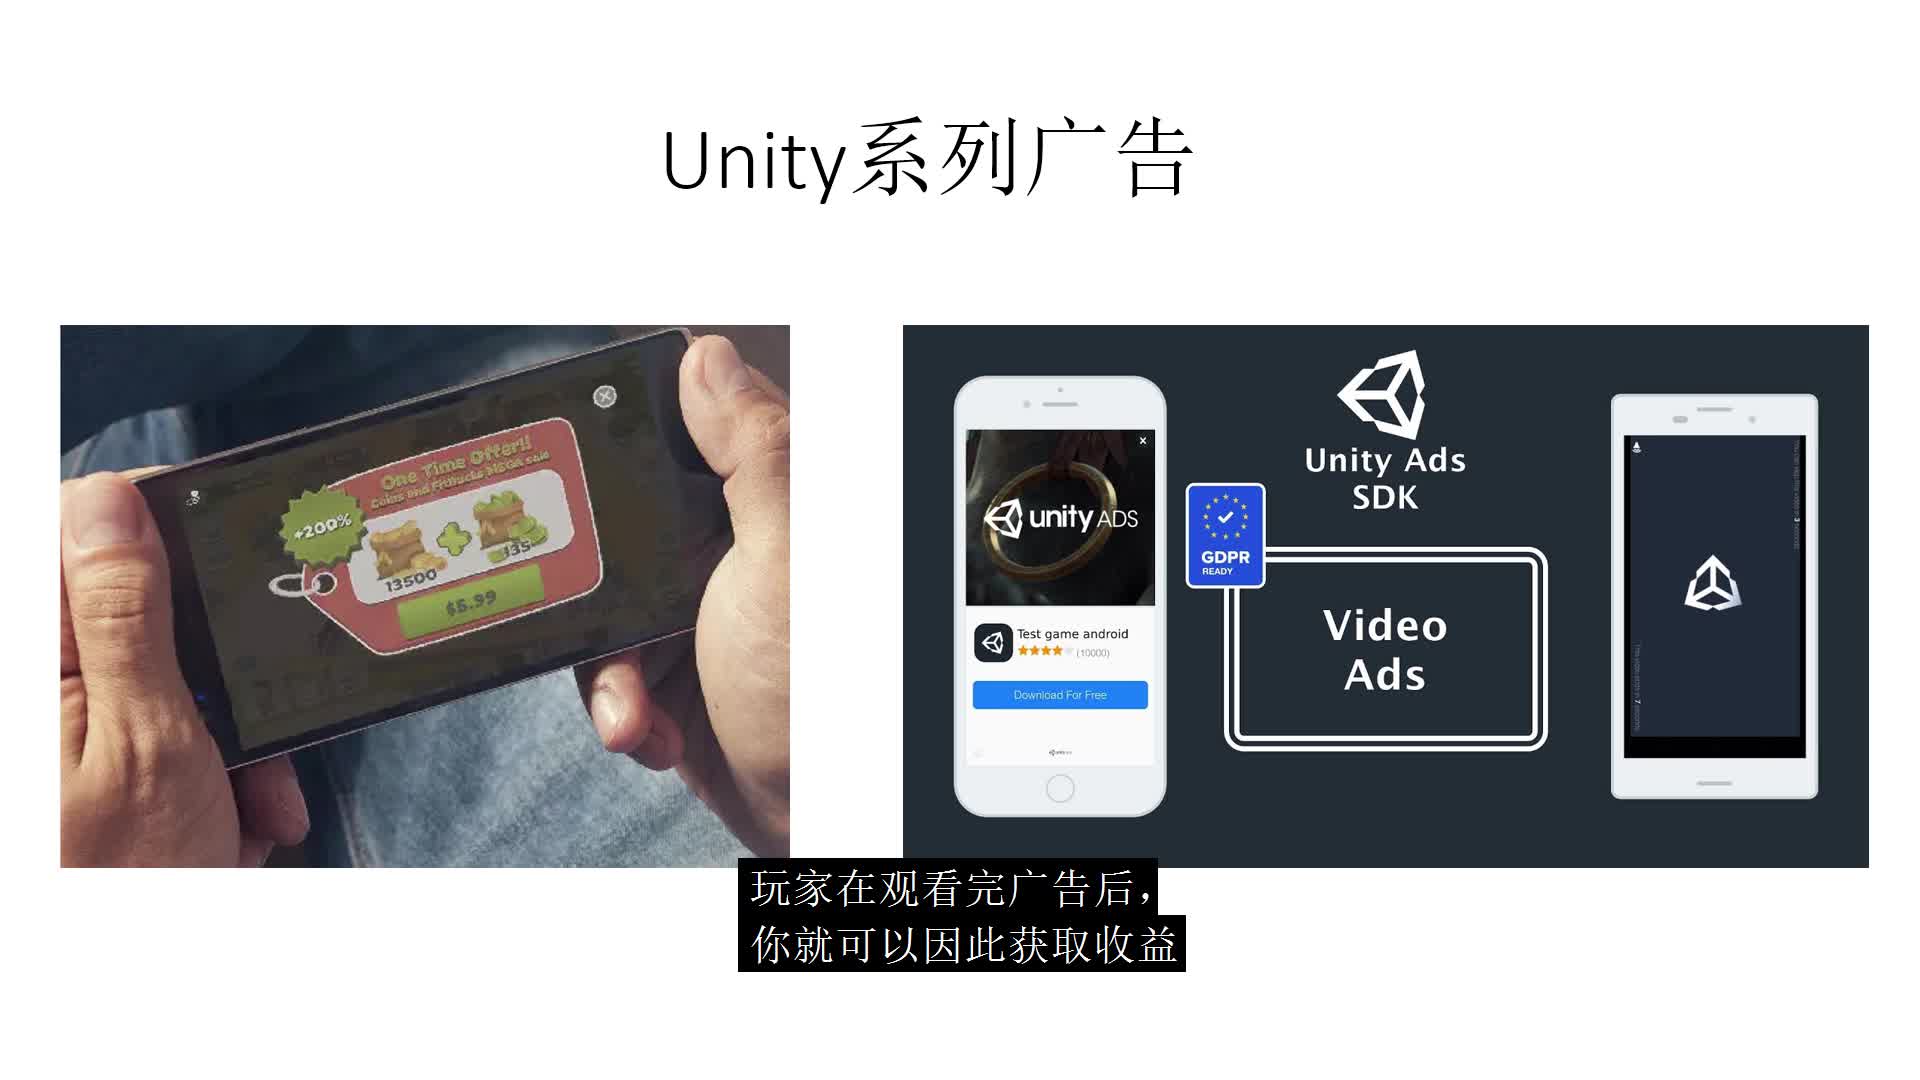 开启Unity3D获利赚钱的功能：接入Unity原生系列广告